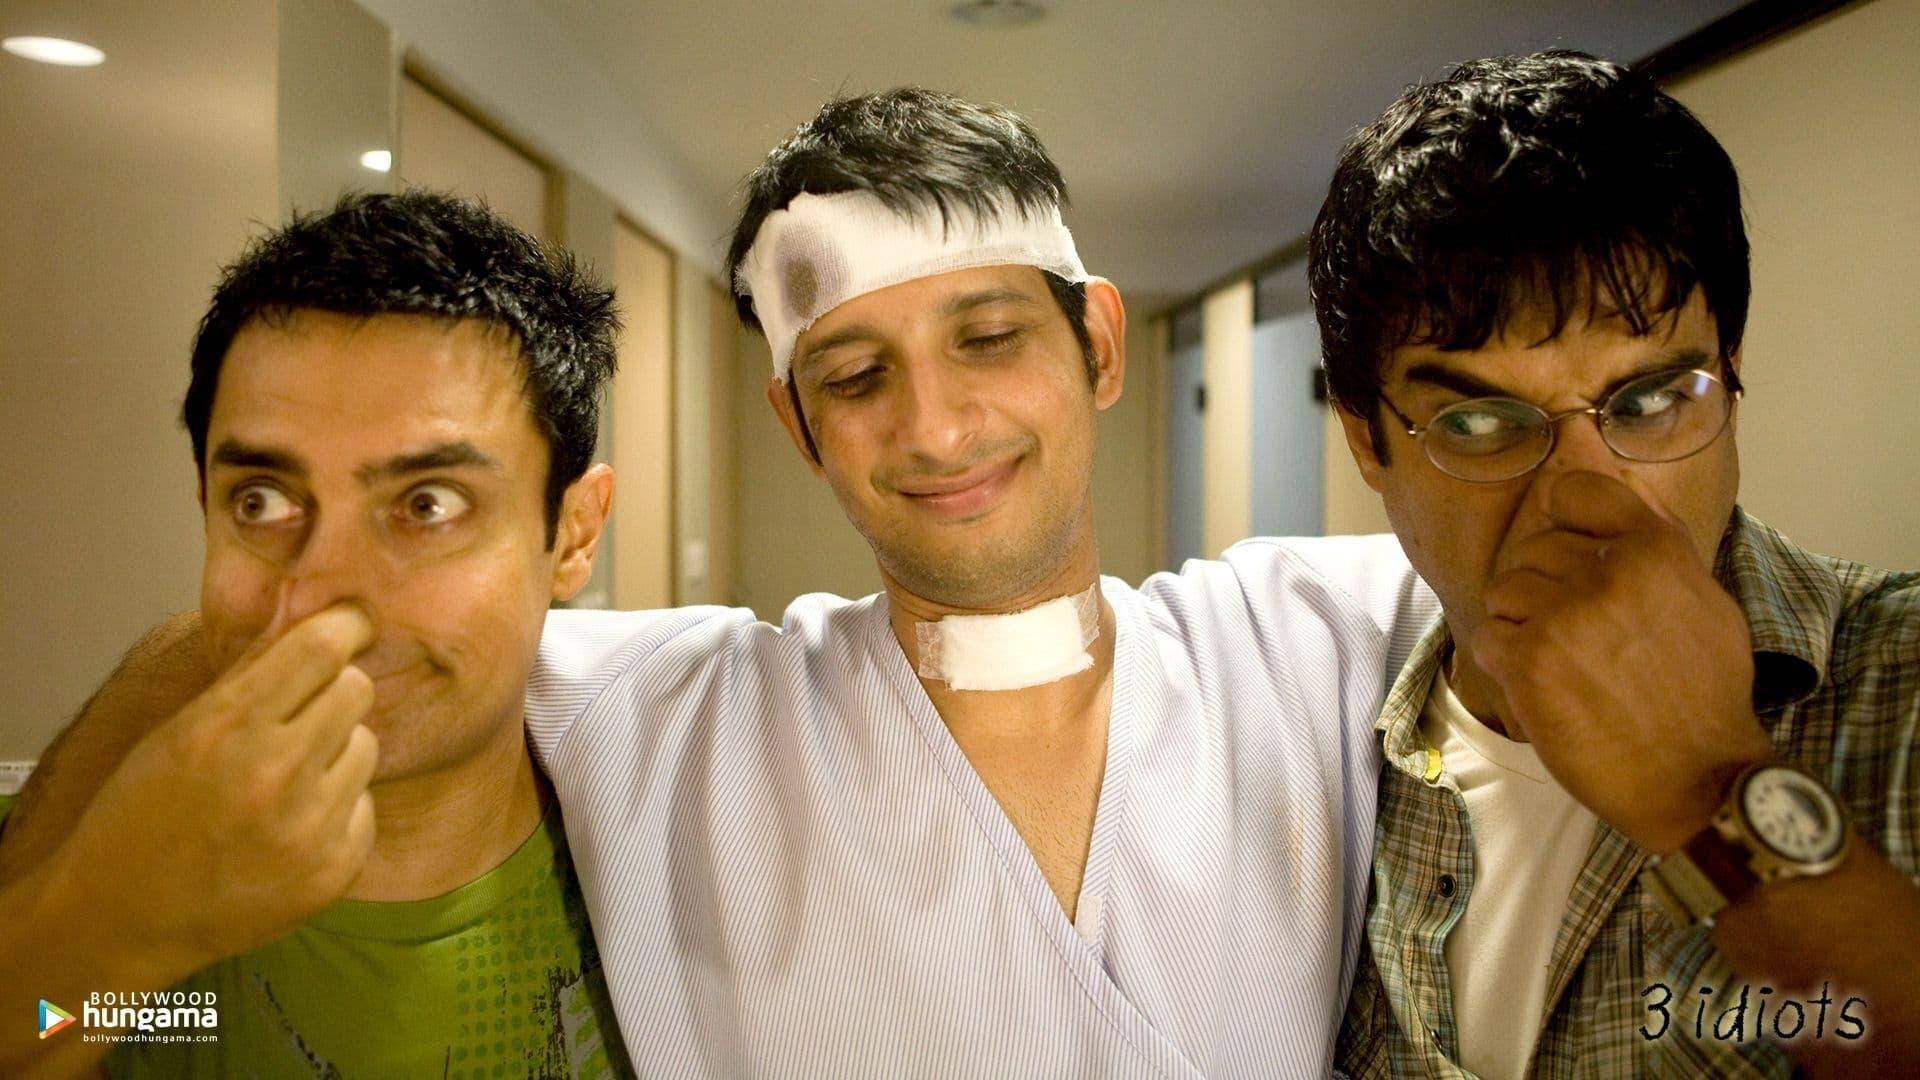 دانلود فیلم هندی ۳ Idiots 2009